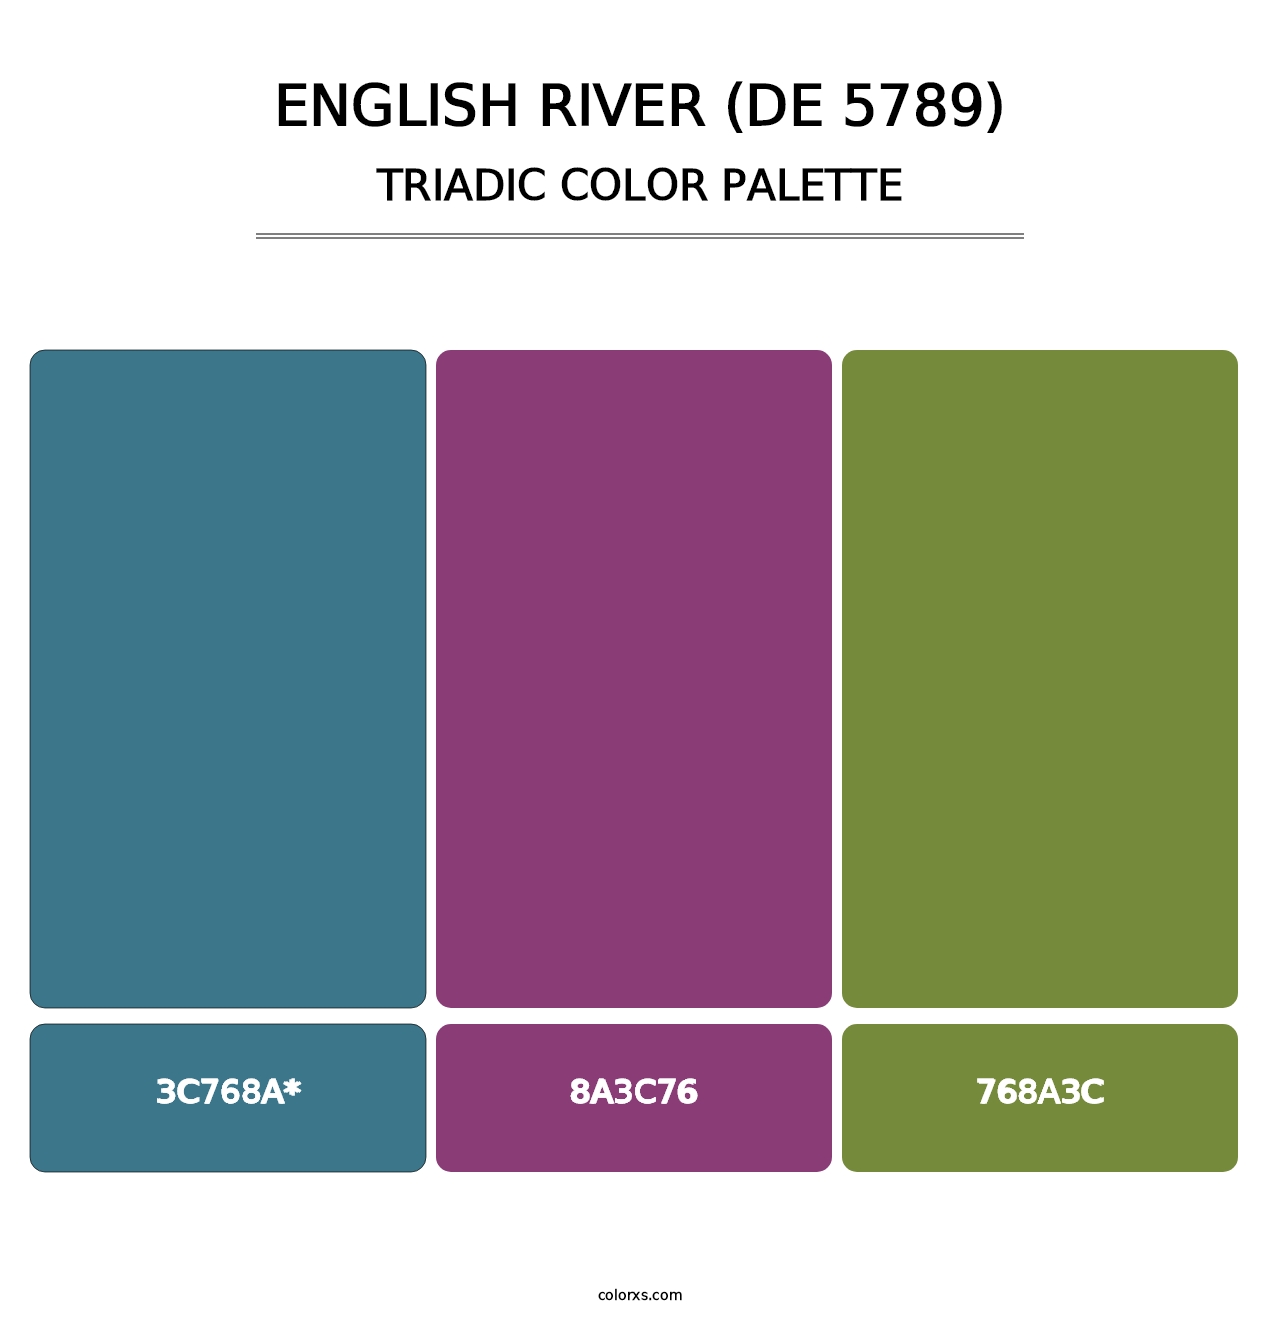 English River (DE 5789) - Triadic Color Palette